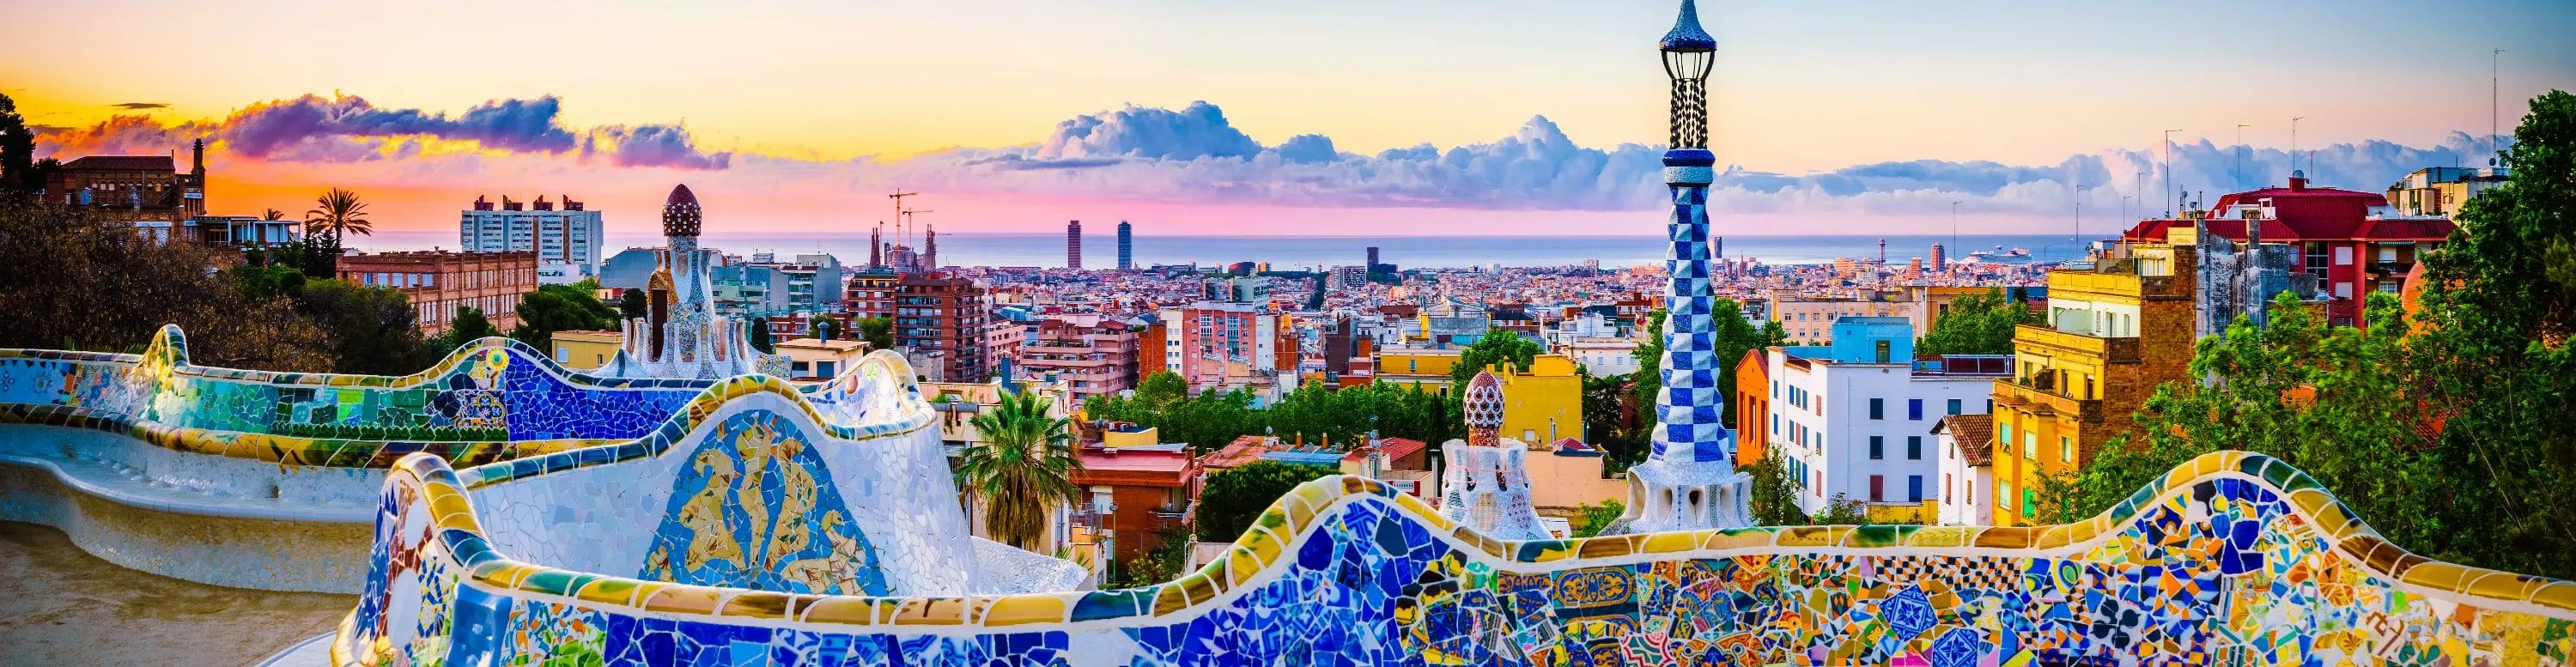 Barcelona - Euroopa populaarsuselt kolmas turismilinn - ReisiGuru.ee